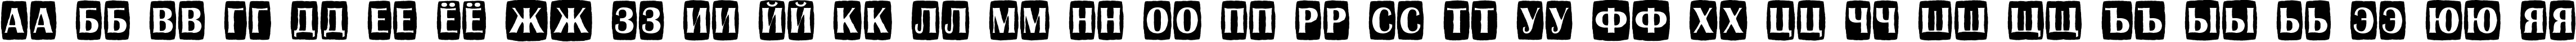 Пример написания русского алфавита шрифтом a_AlbionicTitulCmJgg